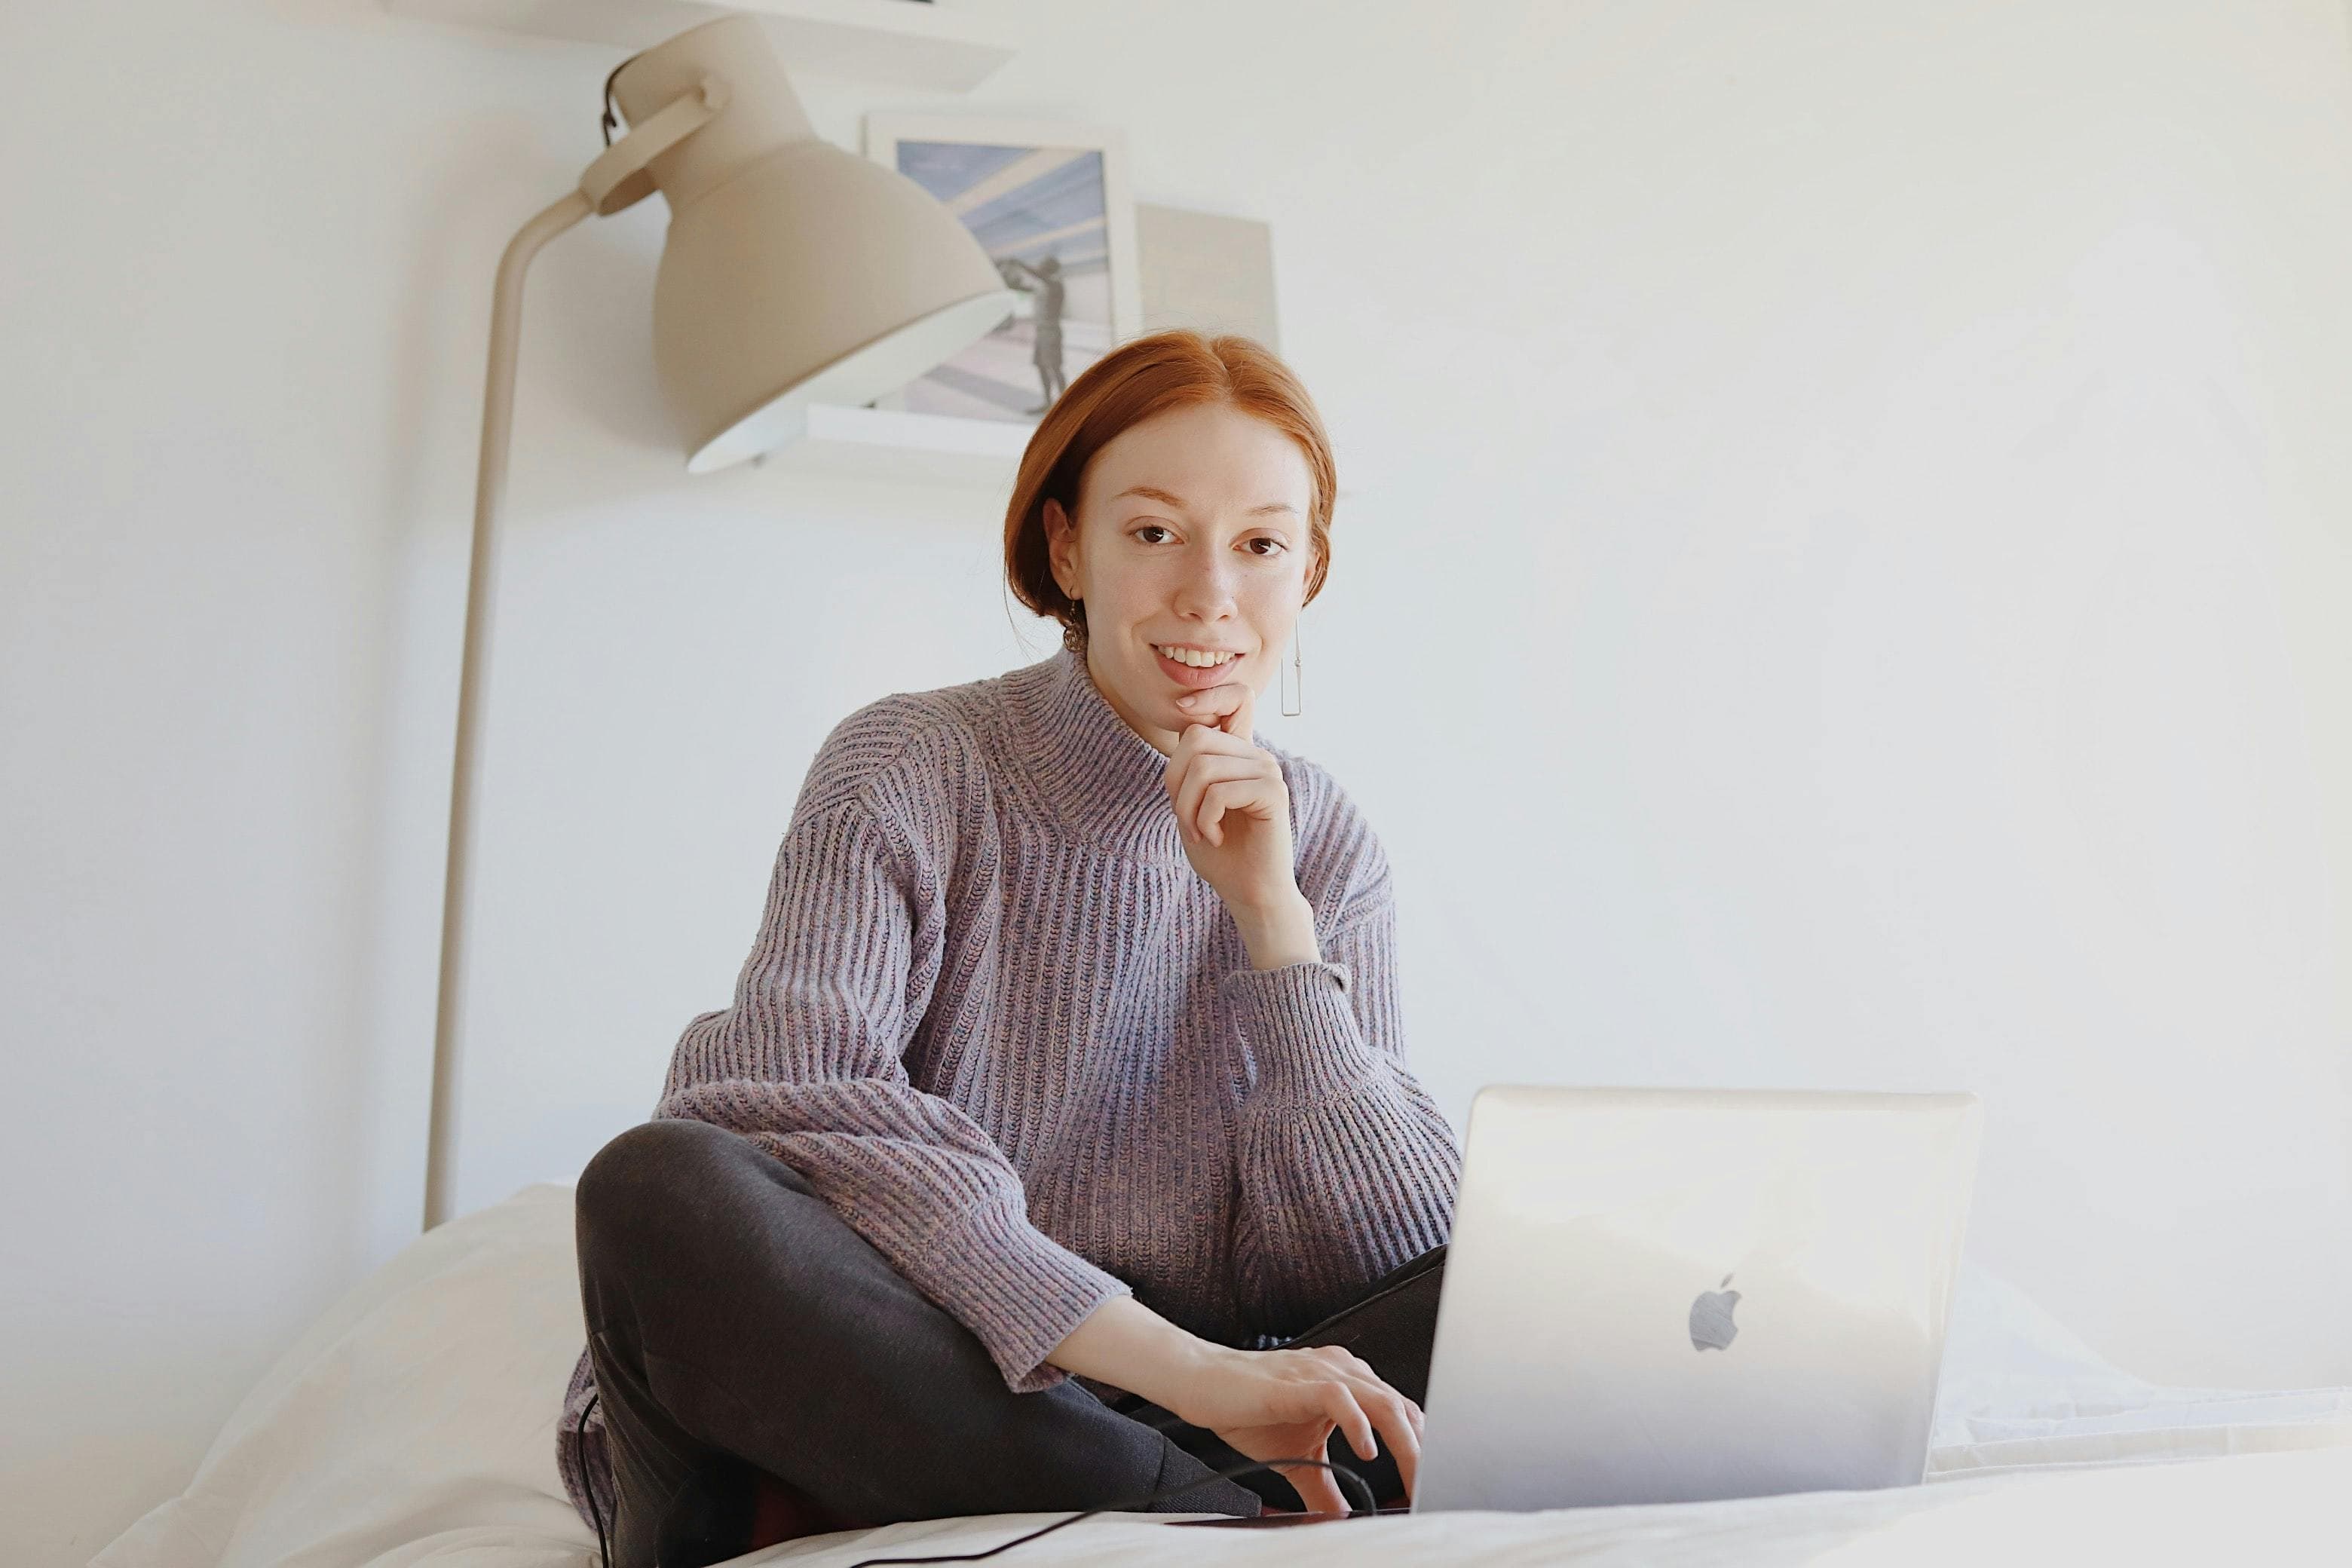 Freelancer on laptop in white room